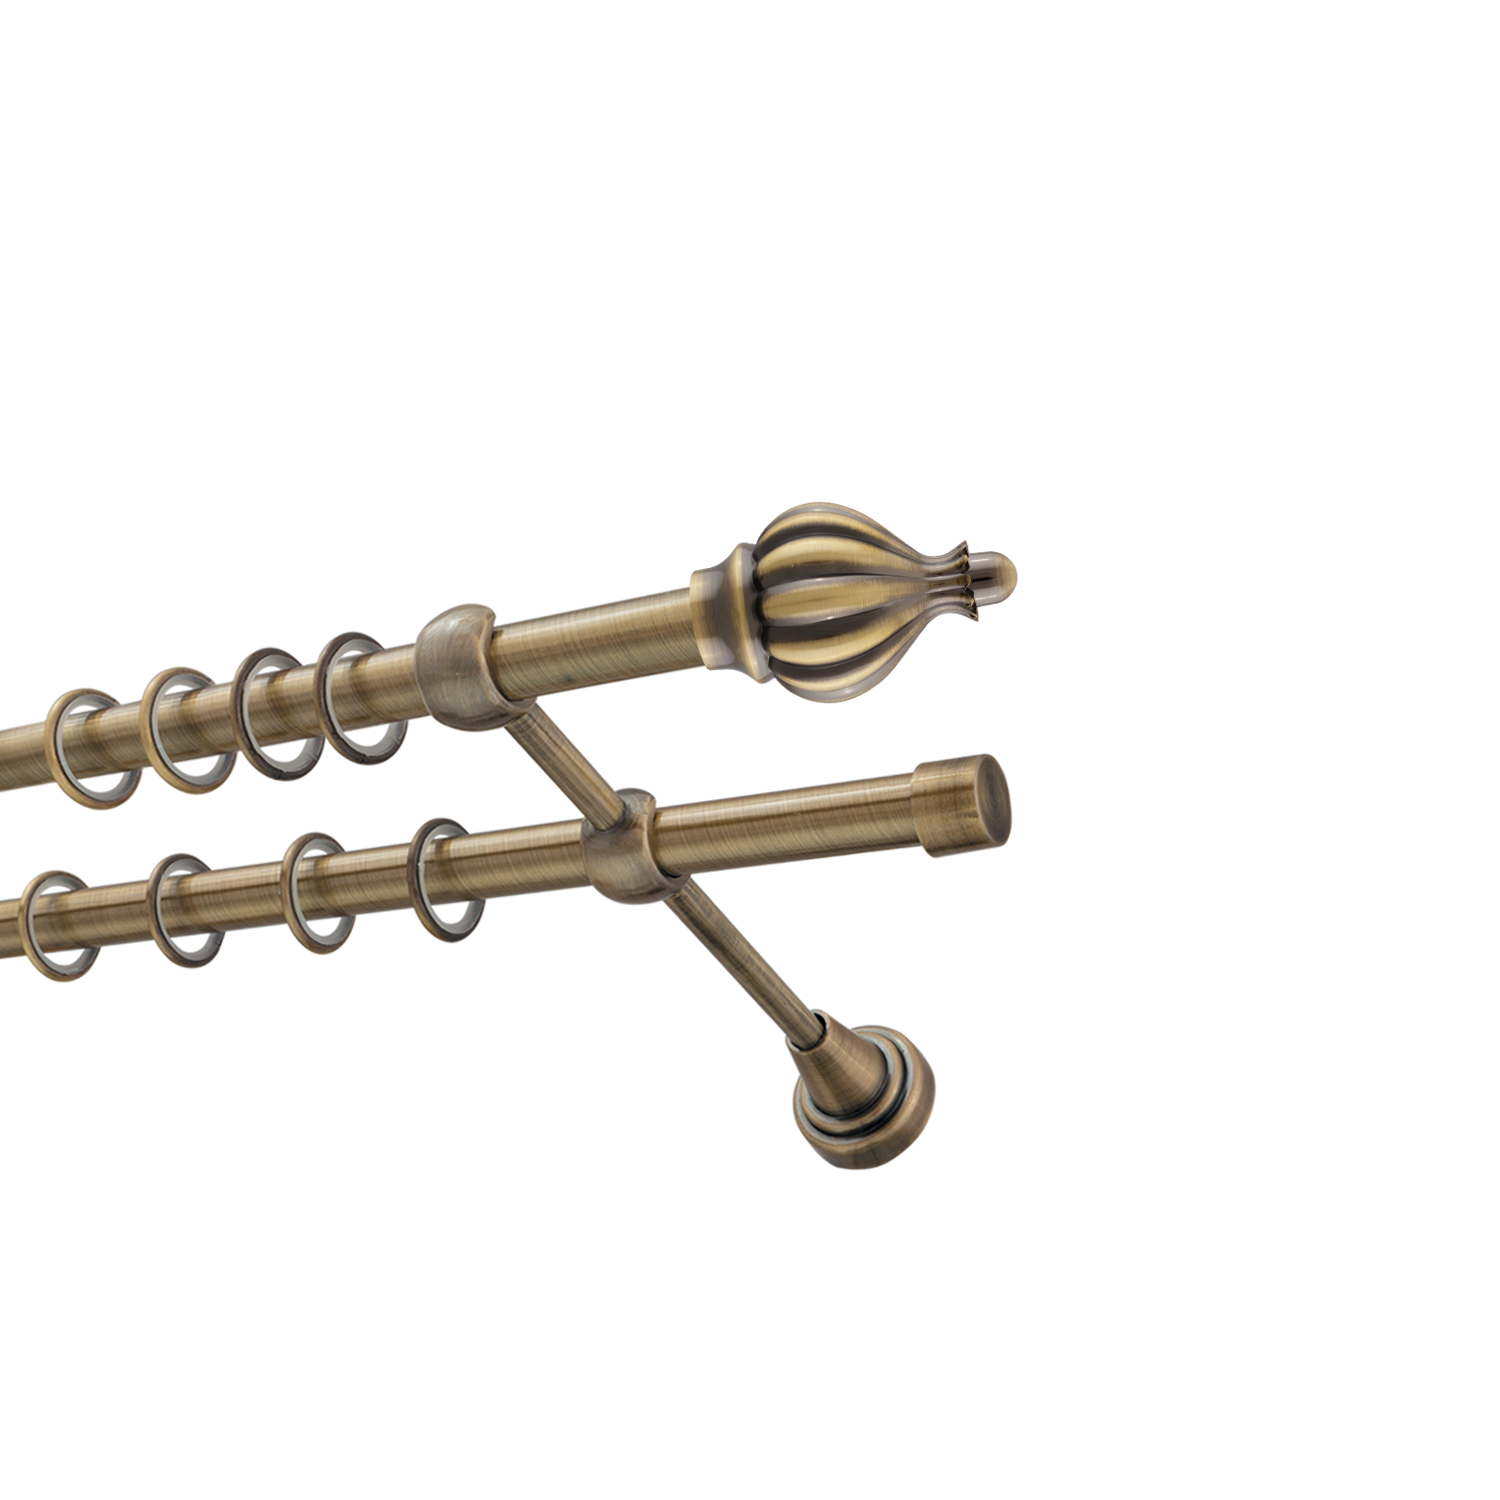 Металлический карниз для штор Афродита, двухрядный 16/16 мм, бронза, гладкая штанга, длина 140 см - фото Wikidecor.ru